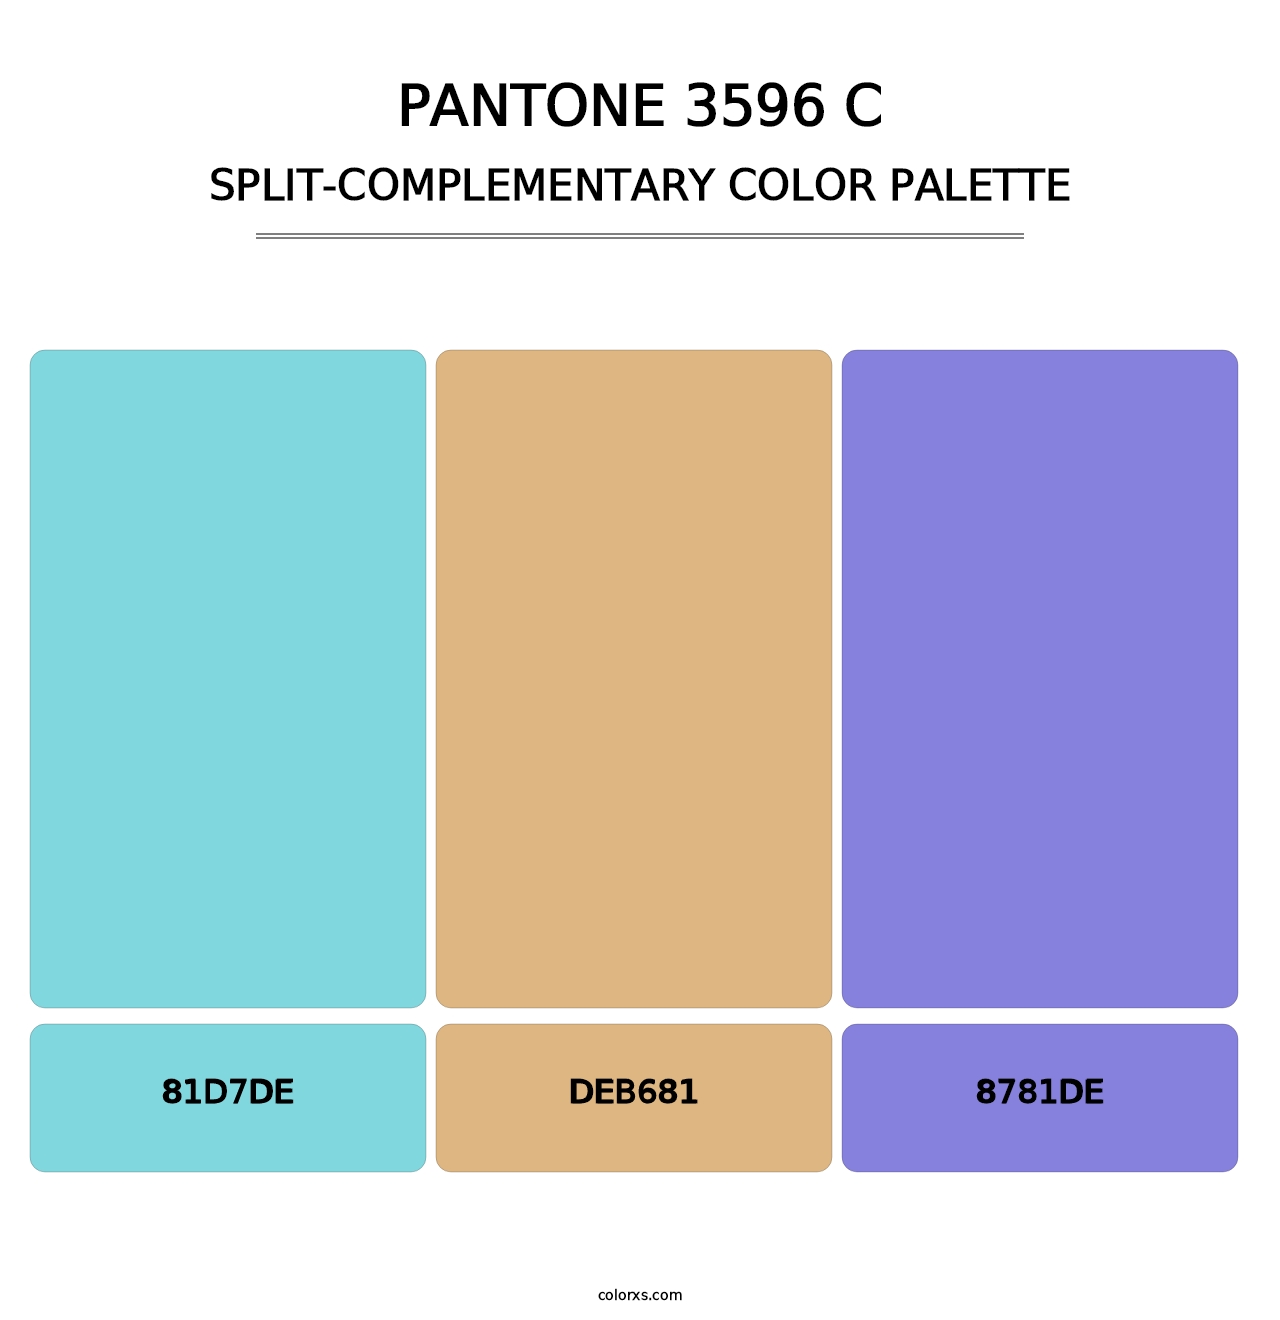 PANTONE 3596 C - Split-Complementary Color Palette